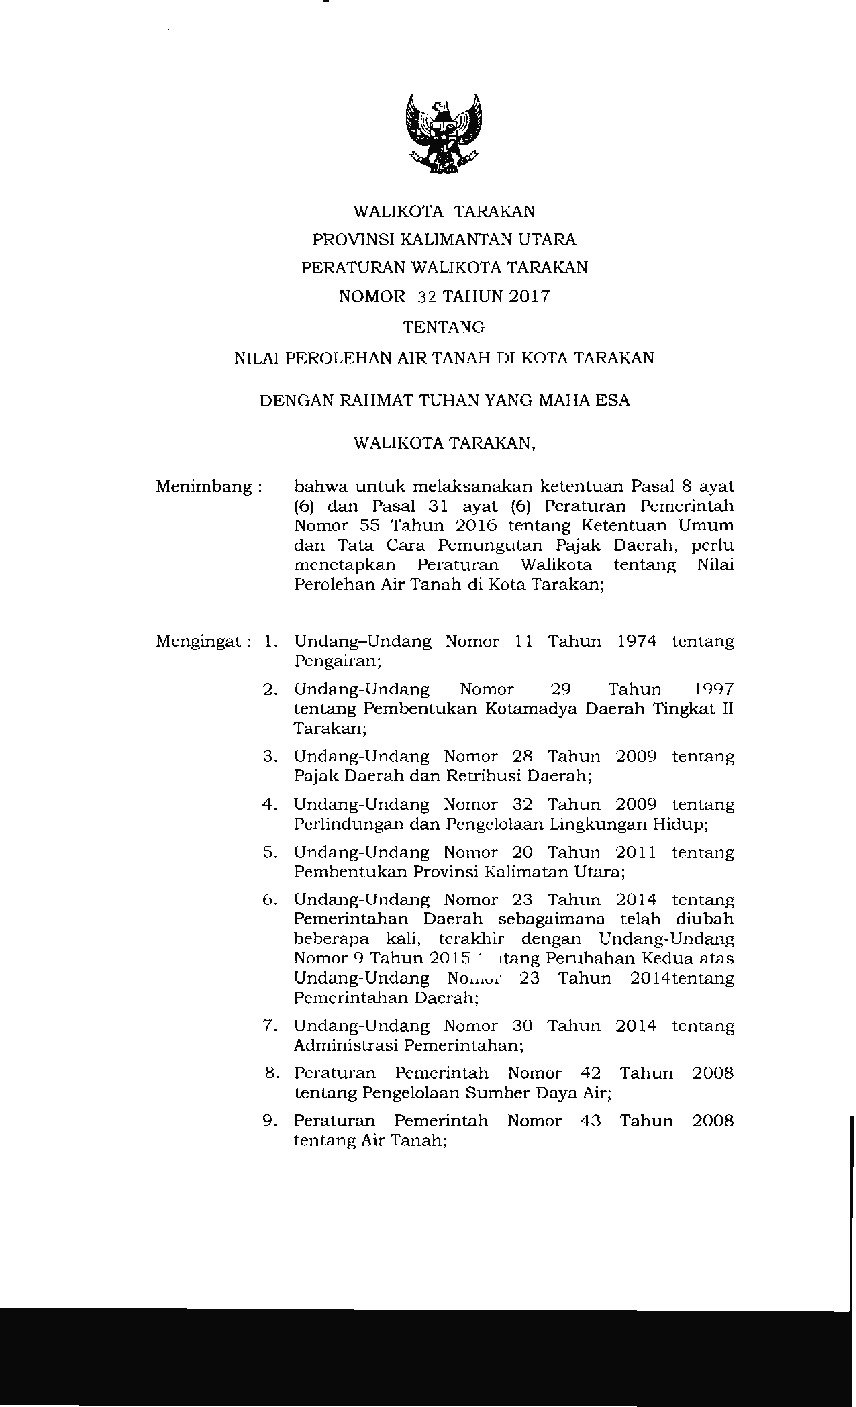 Peraturan Walikota Tarakan No 32 tahun 2017 tentang Nilai Perolehan Air Tanah di Kota Tarakan